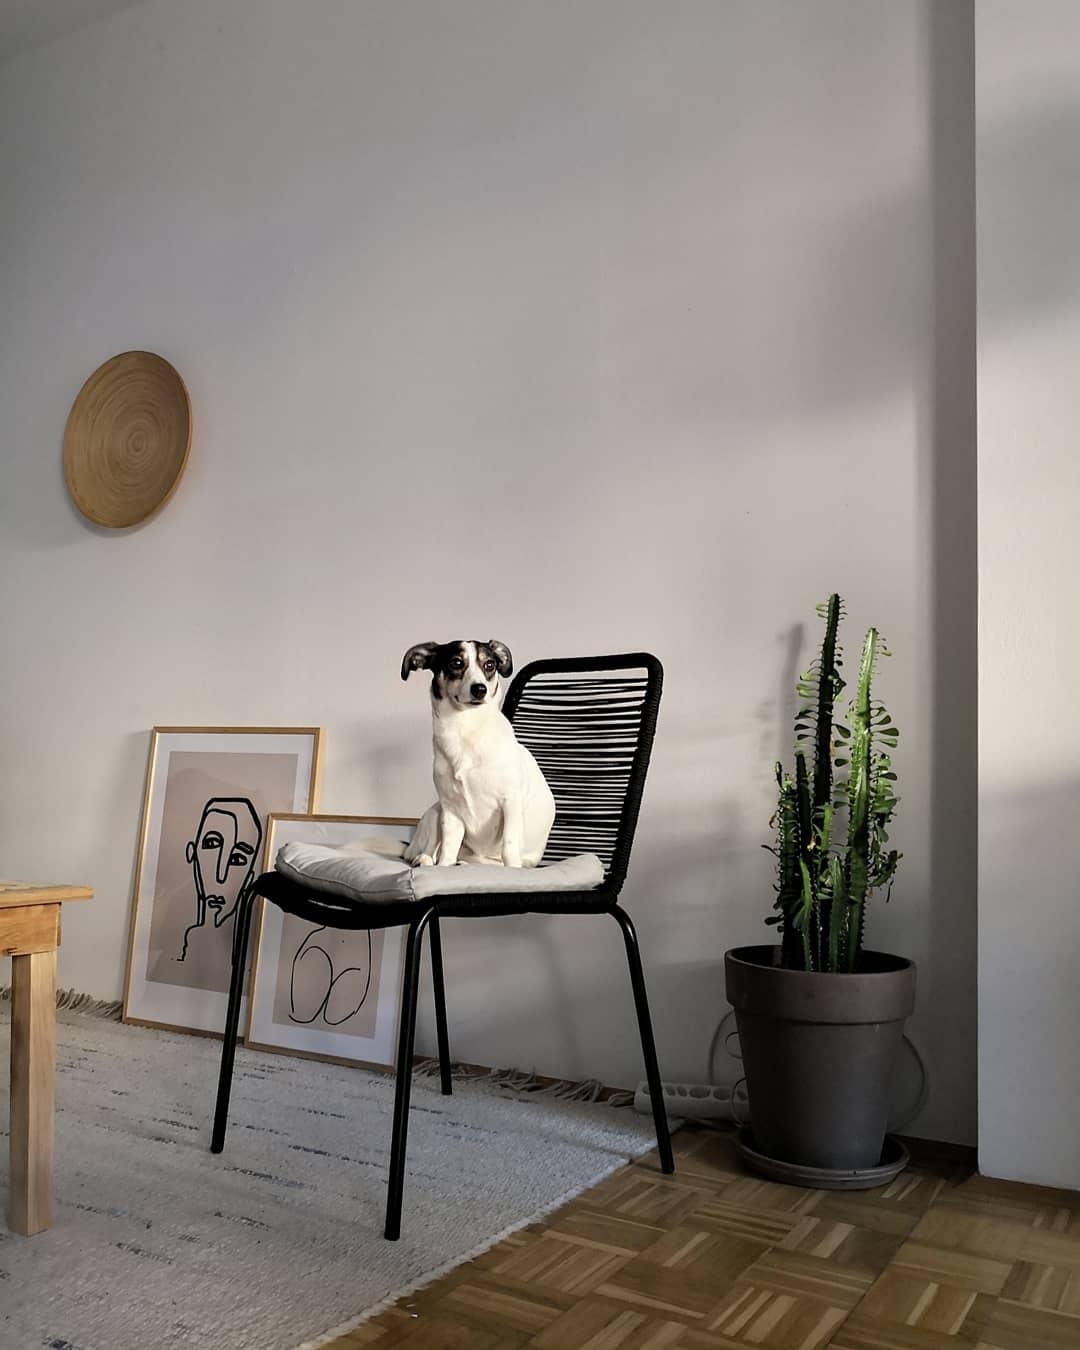 Hundeleben
#adogshome #livingroom #scandinavian #nordicmodern 